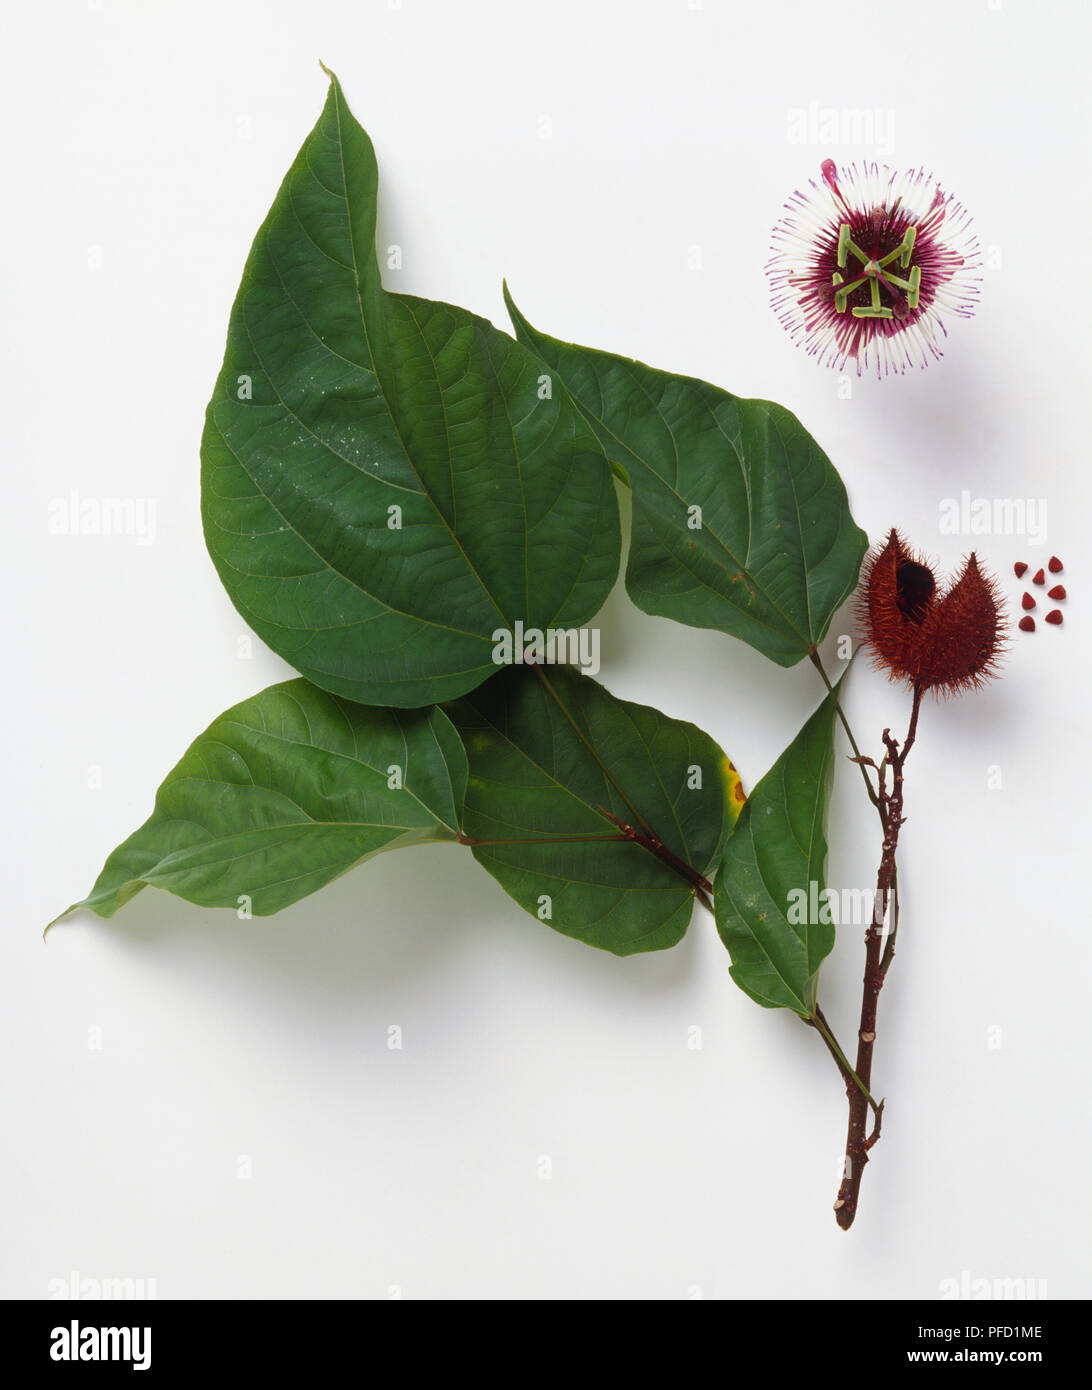 Bixa Orellana, bija, Orleansbaum tallo con grandes hojas cordiformes verde, una vaina de semillas espinosas, una flor y semillas. Foto de stock